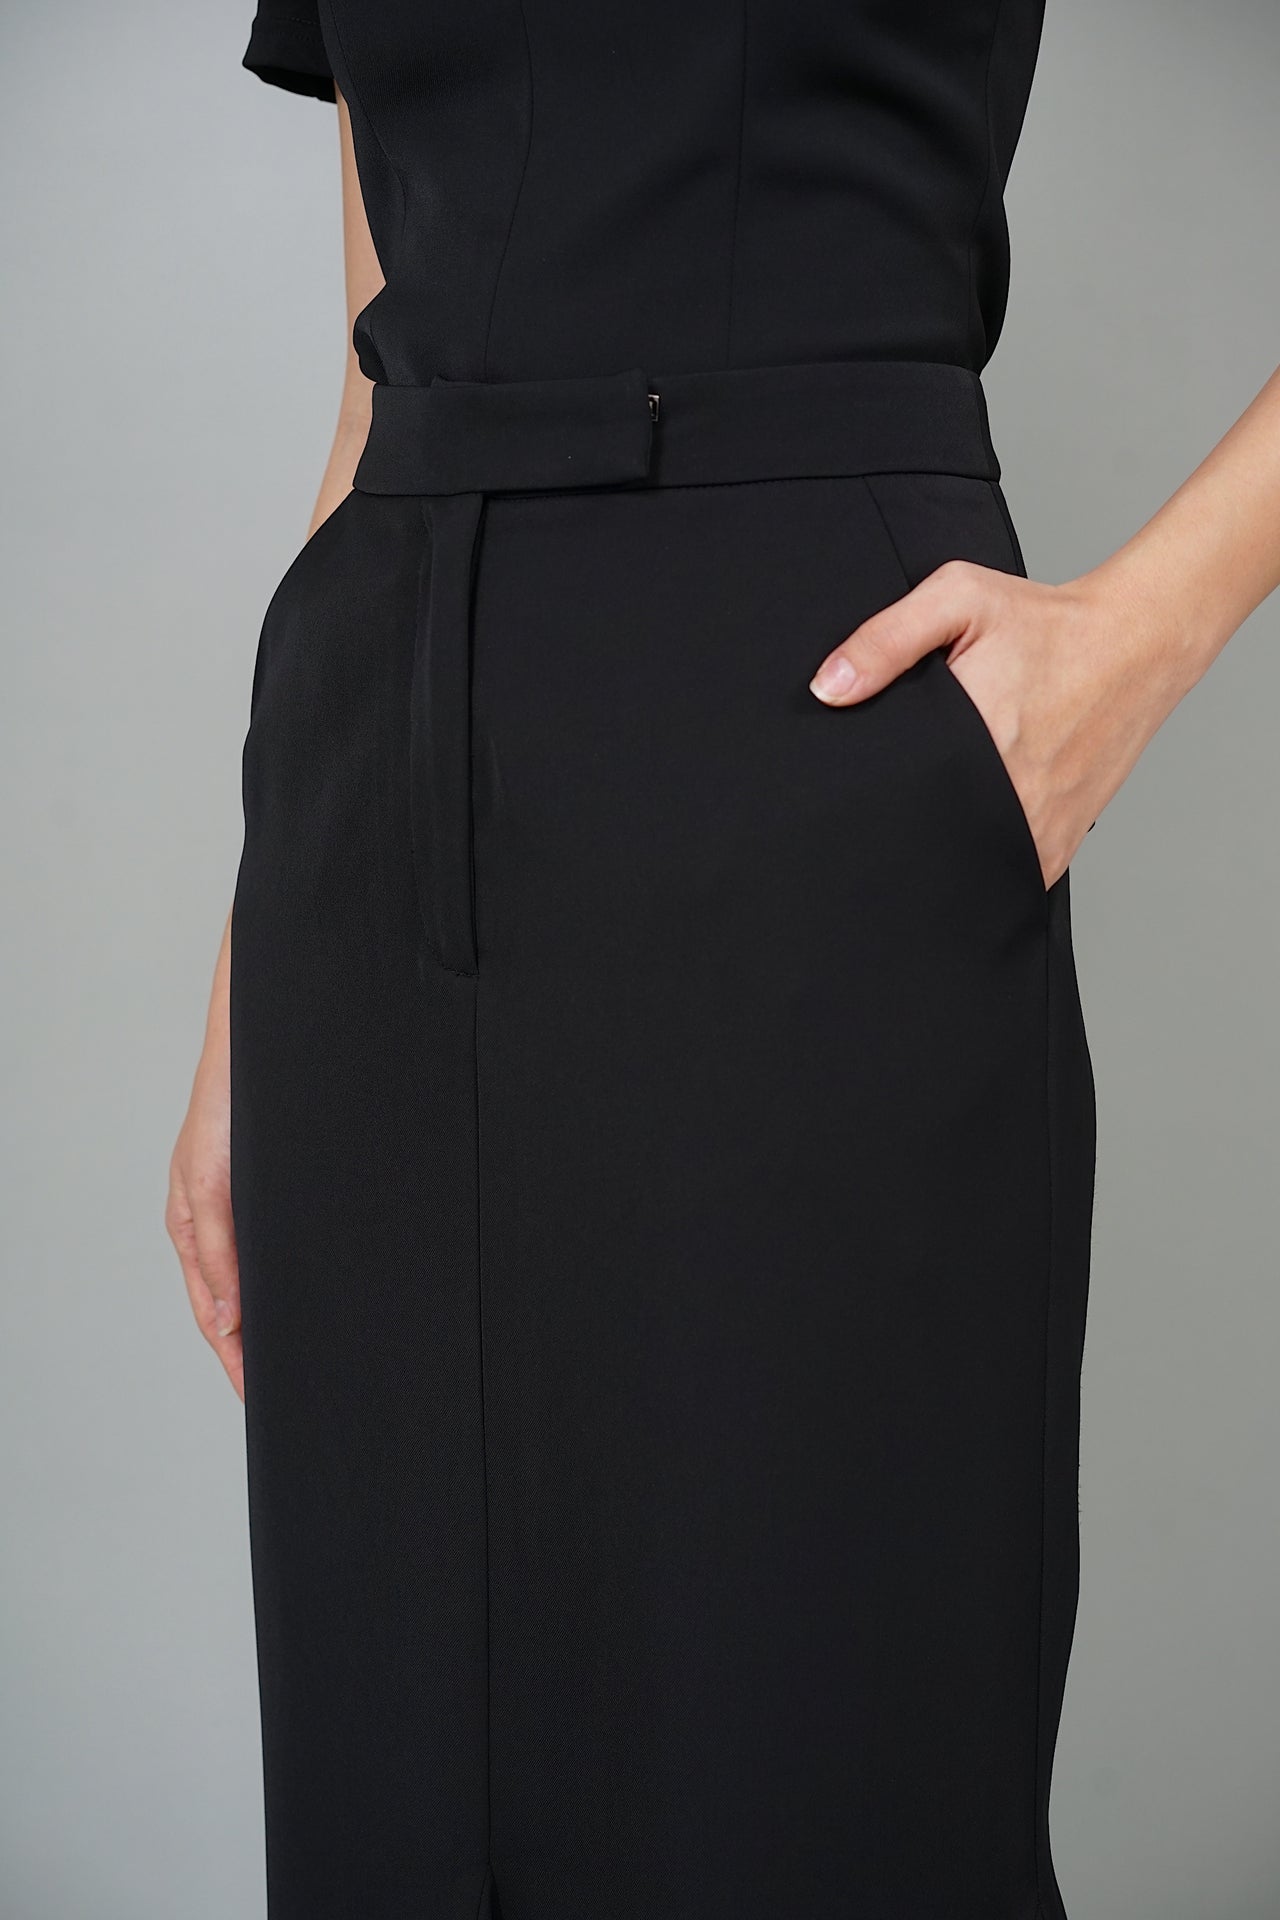 Abela Flute Skirt in Black